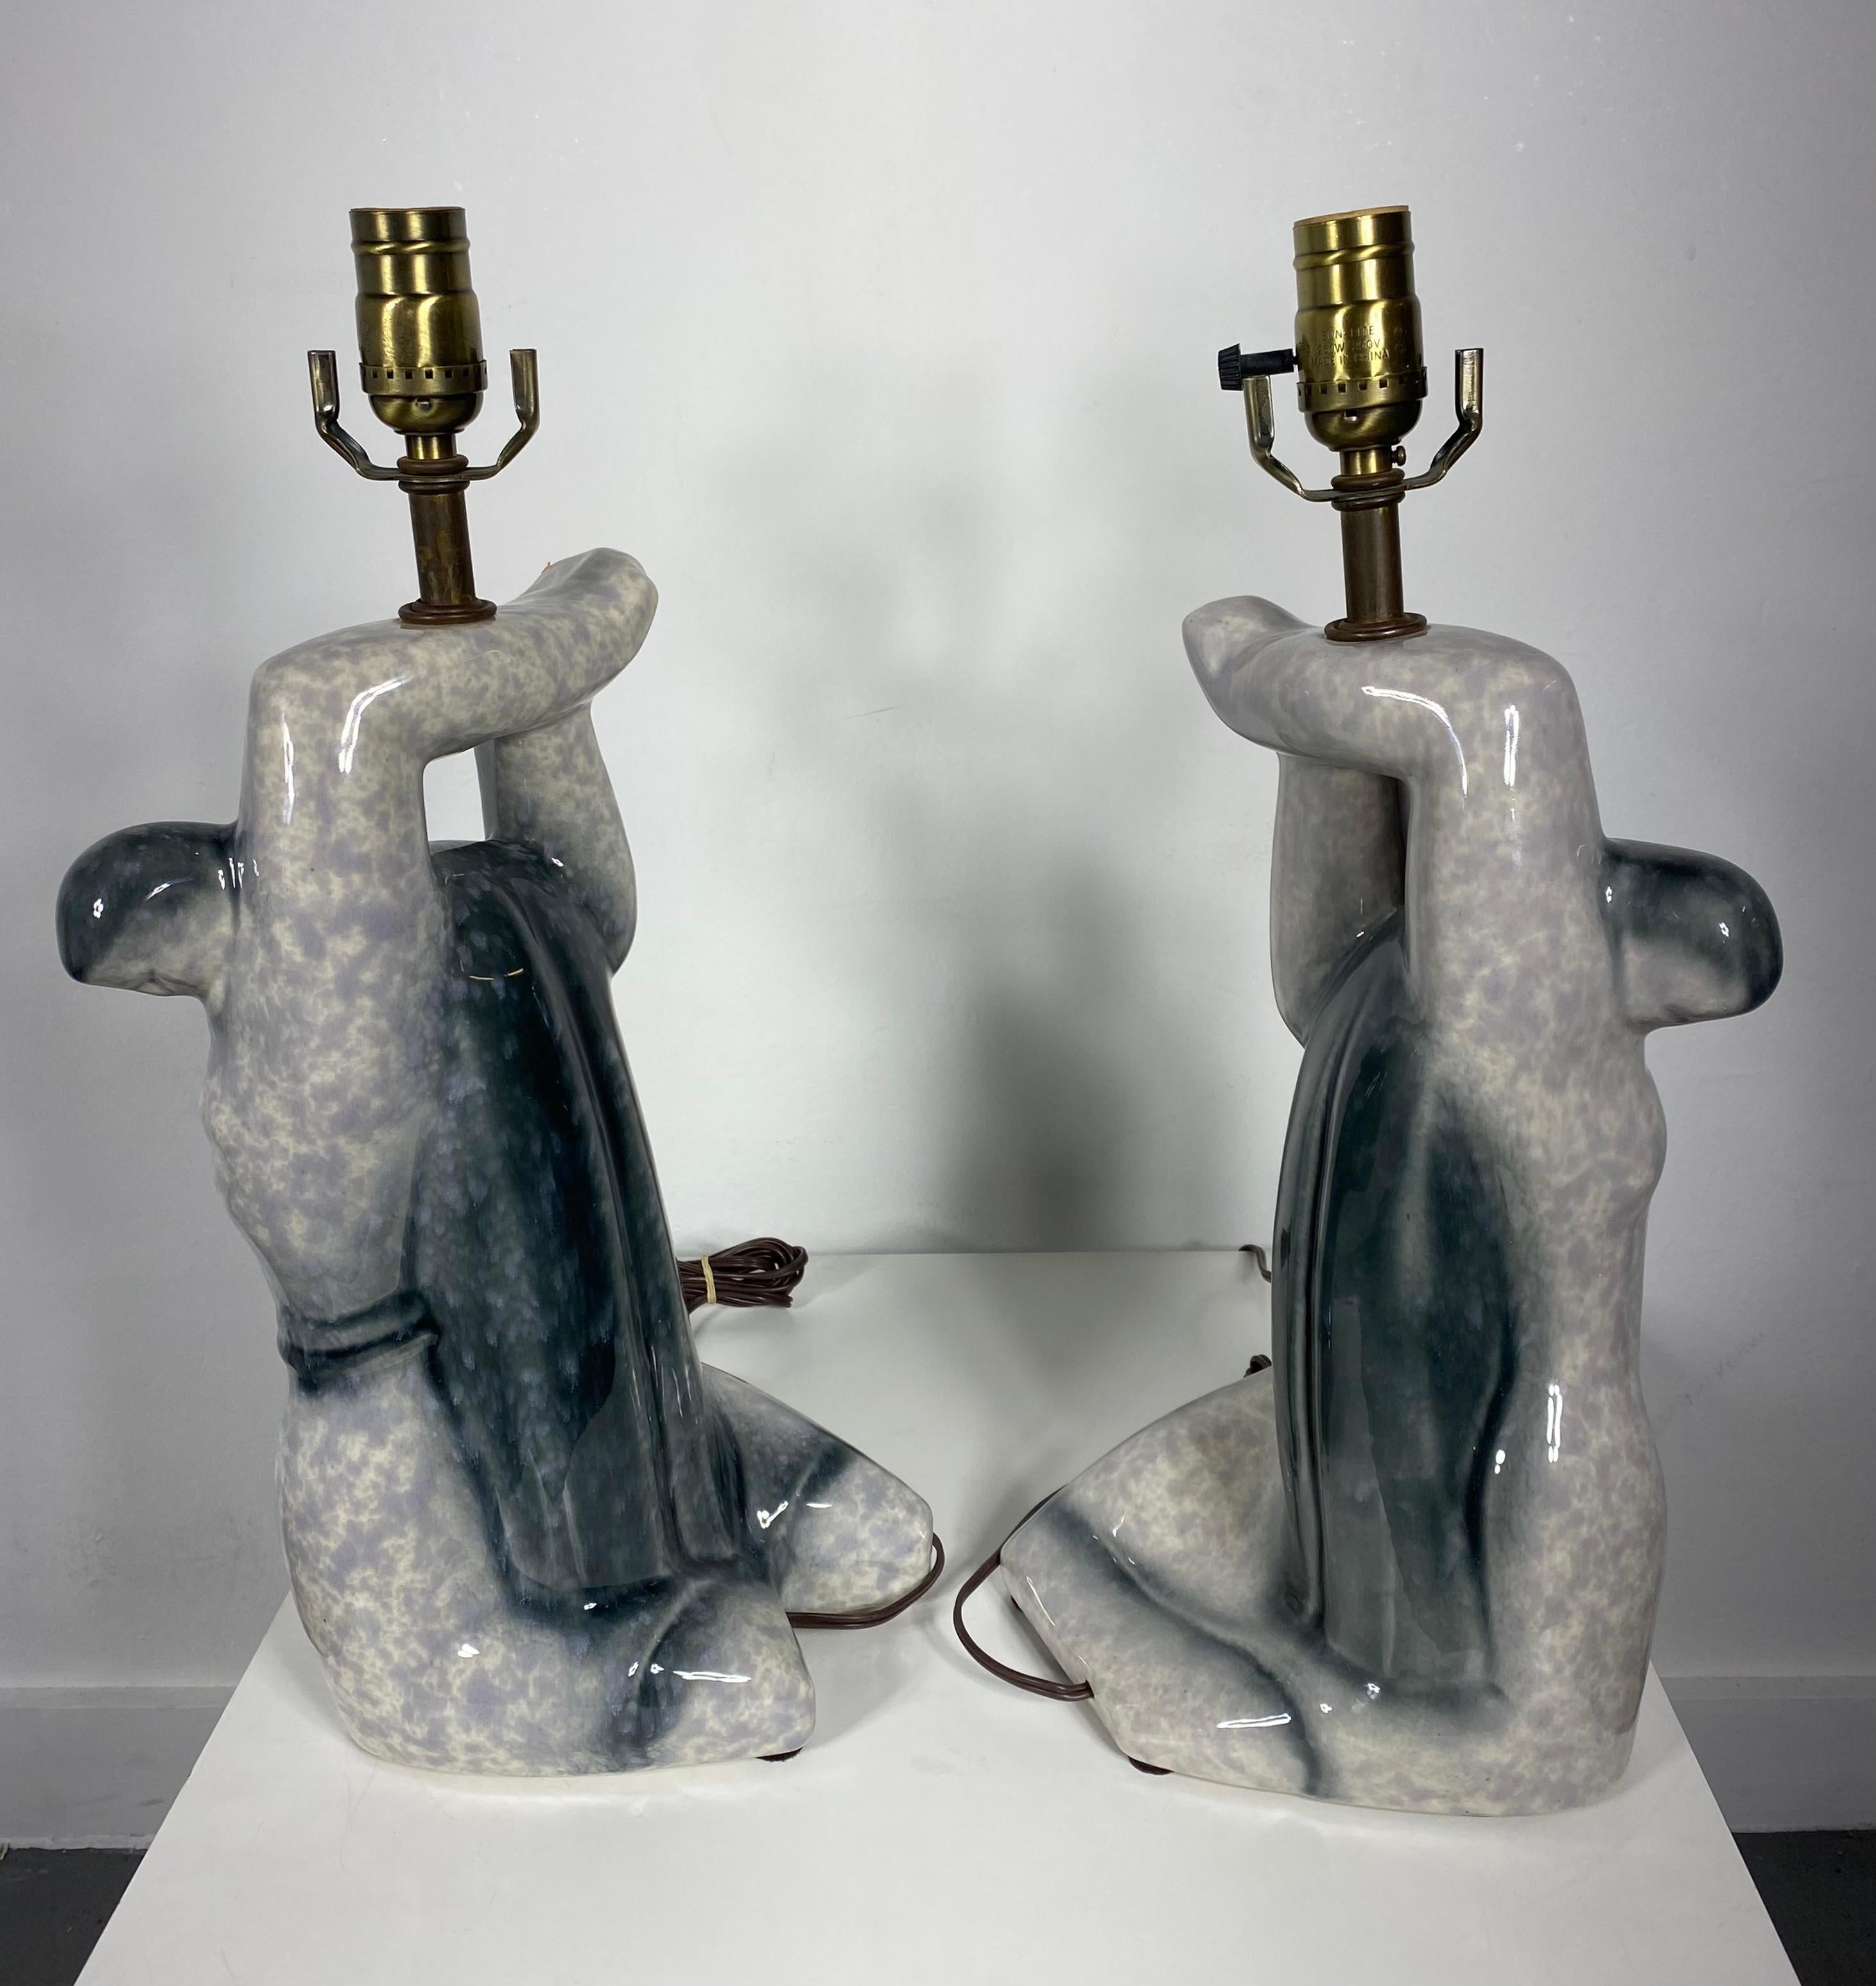 Paar kubistische skulpturale 1940er Heifetz Keramik Figur Lampen... Wunderschöne graue und anthrazitfarbene Glasur,, Super stilisiert,,Klassisches modernistisches Design.